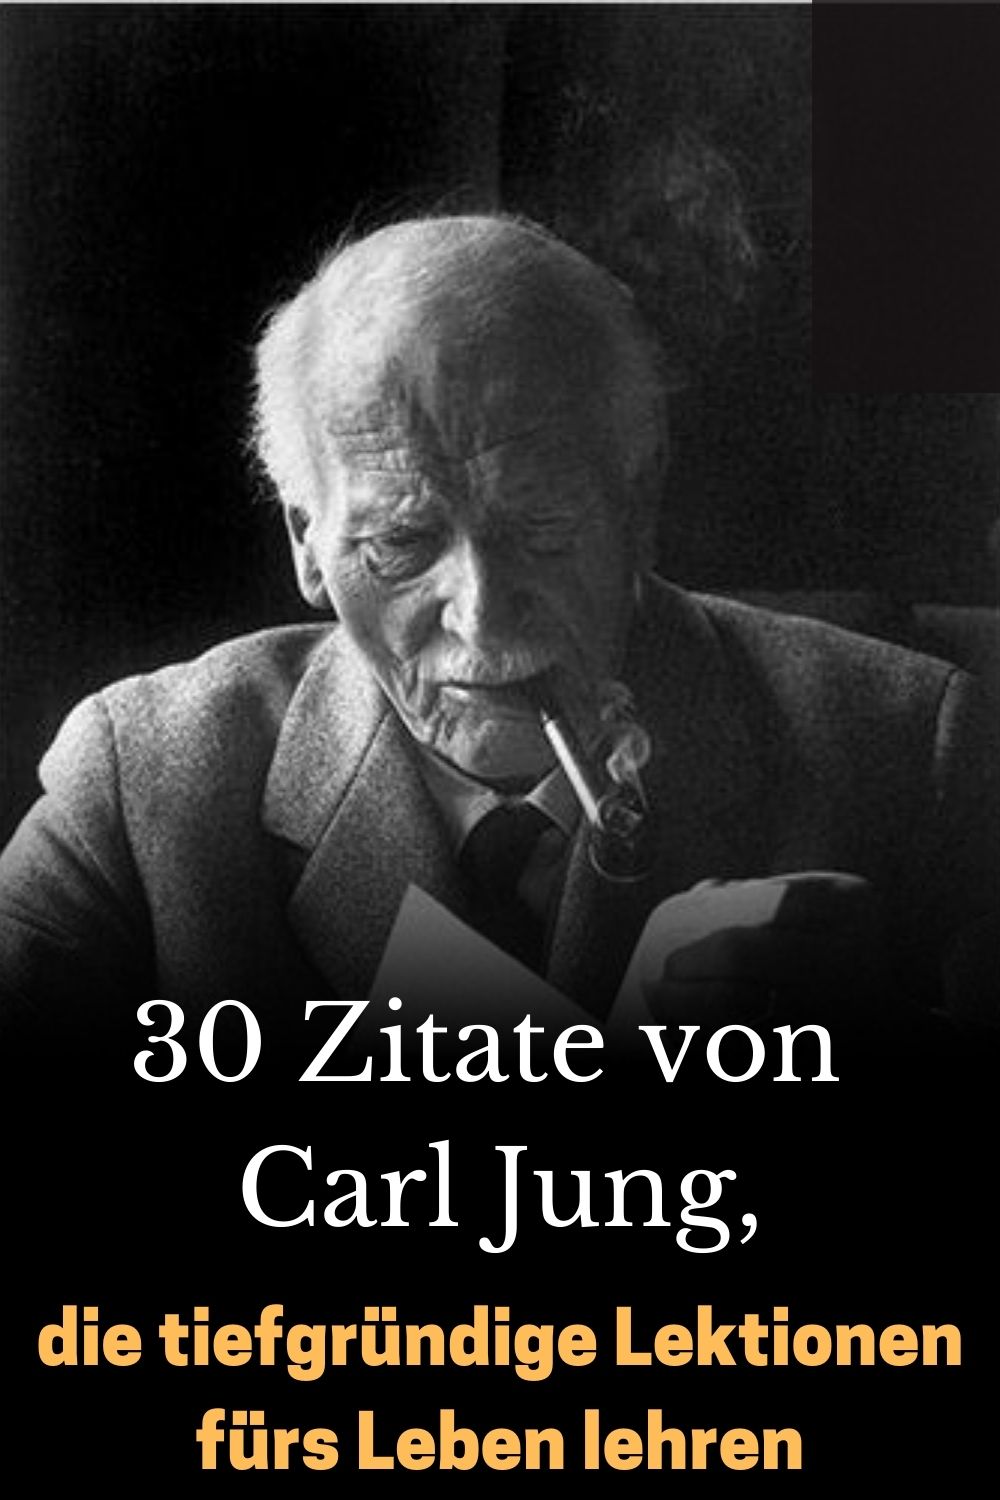 30-Zitate-von-Carl-Jung-die-tiefgruendige-Lektionen-fuers-Leben-lehren